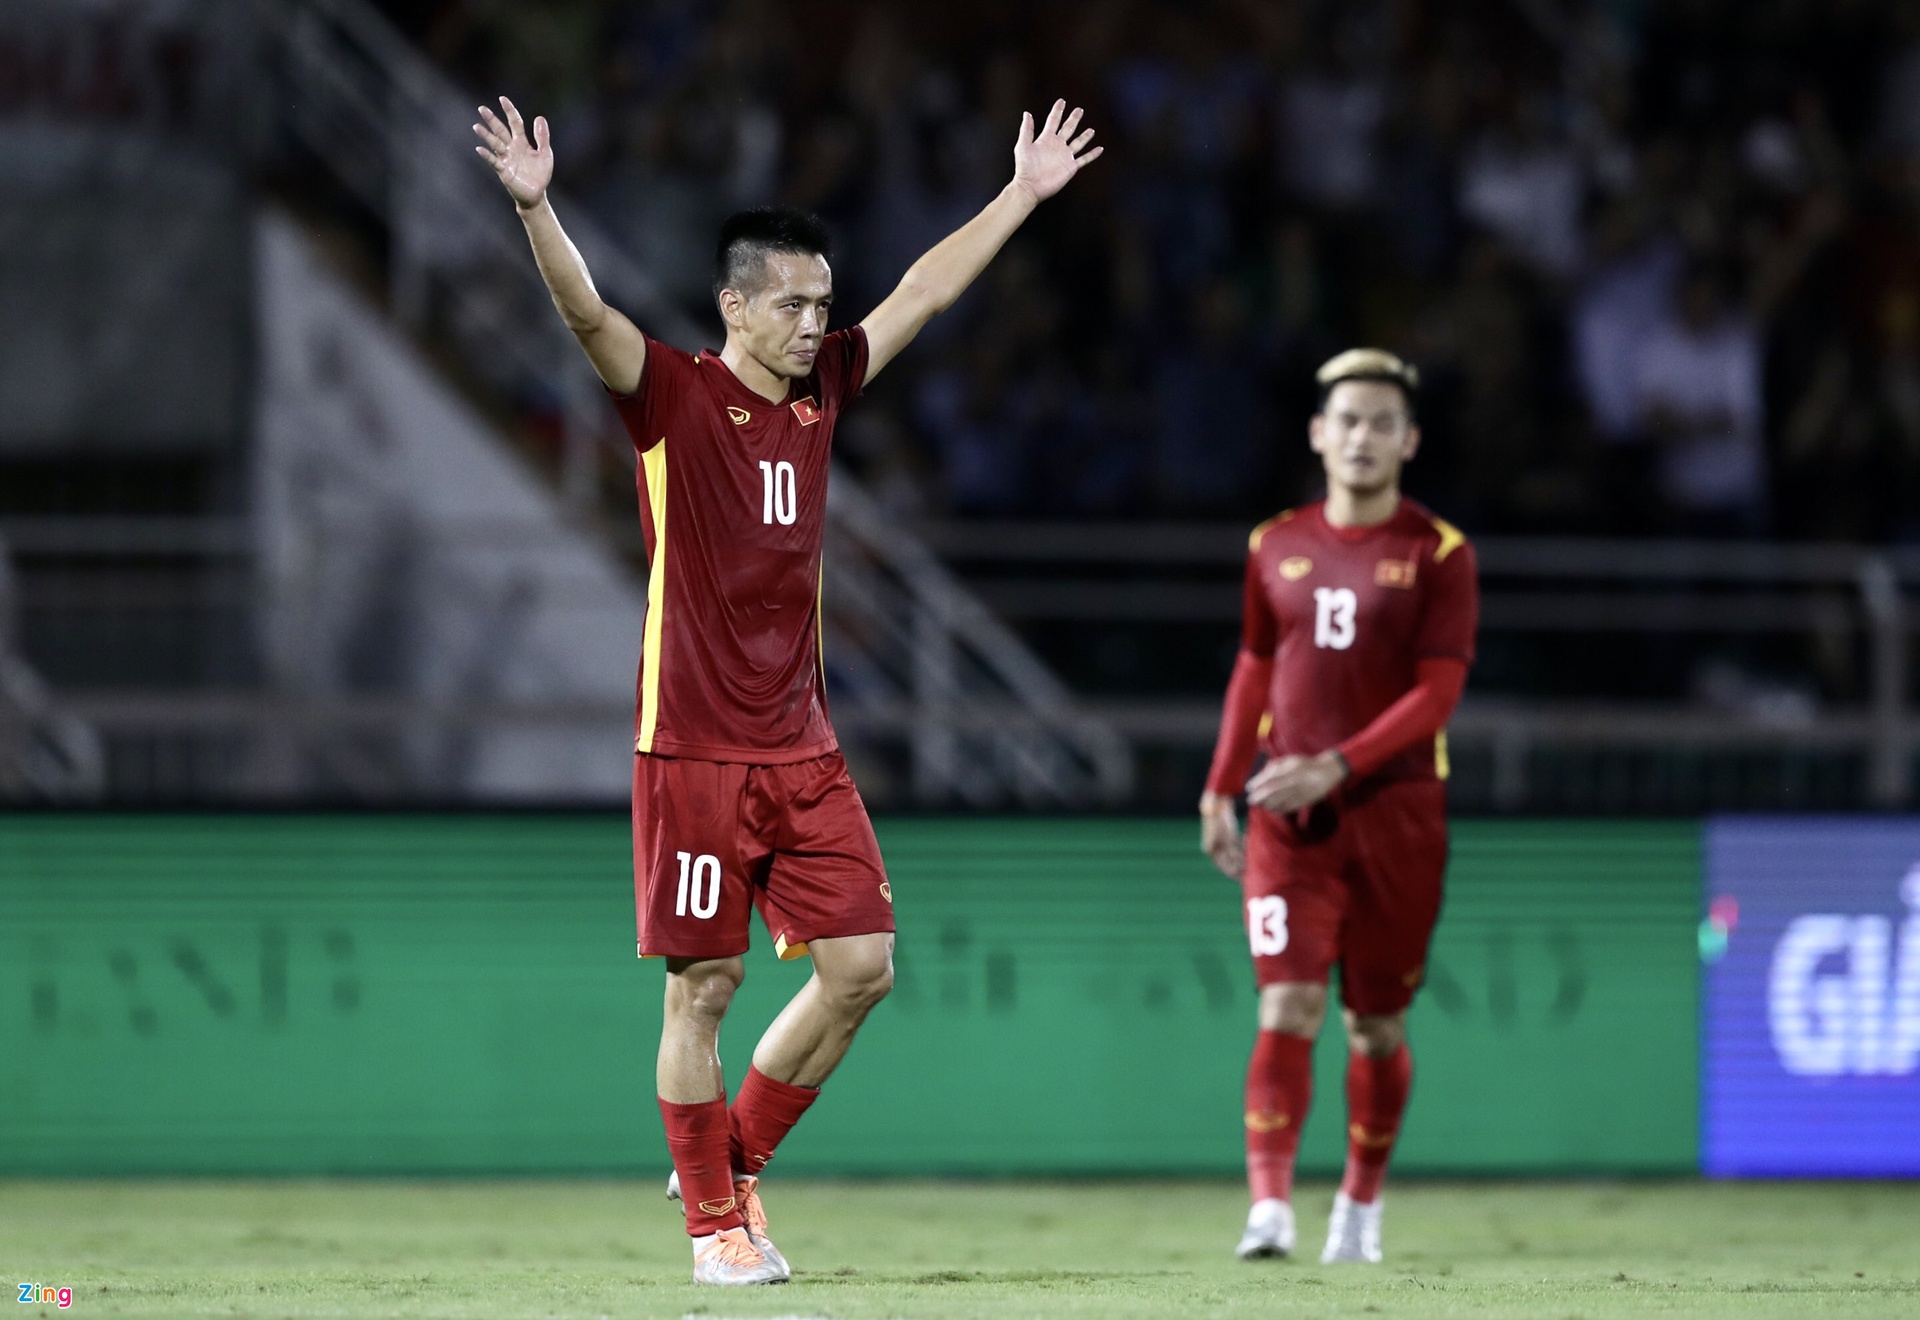 Tuyển Việt Nam thắng Singapore 4-0 - Ảnh 1.